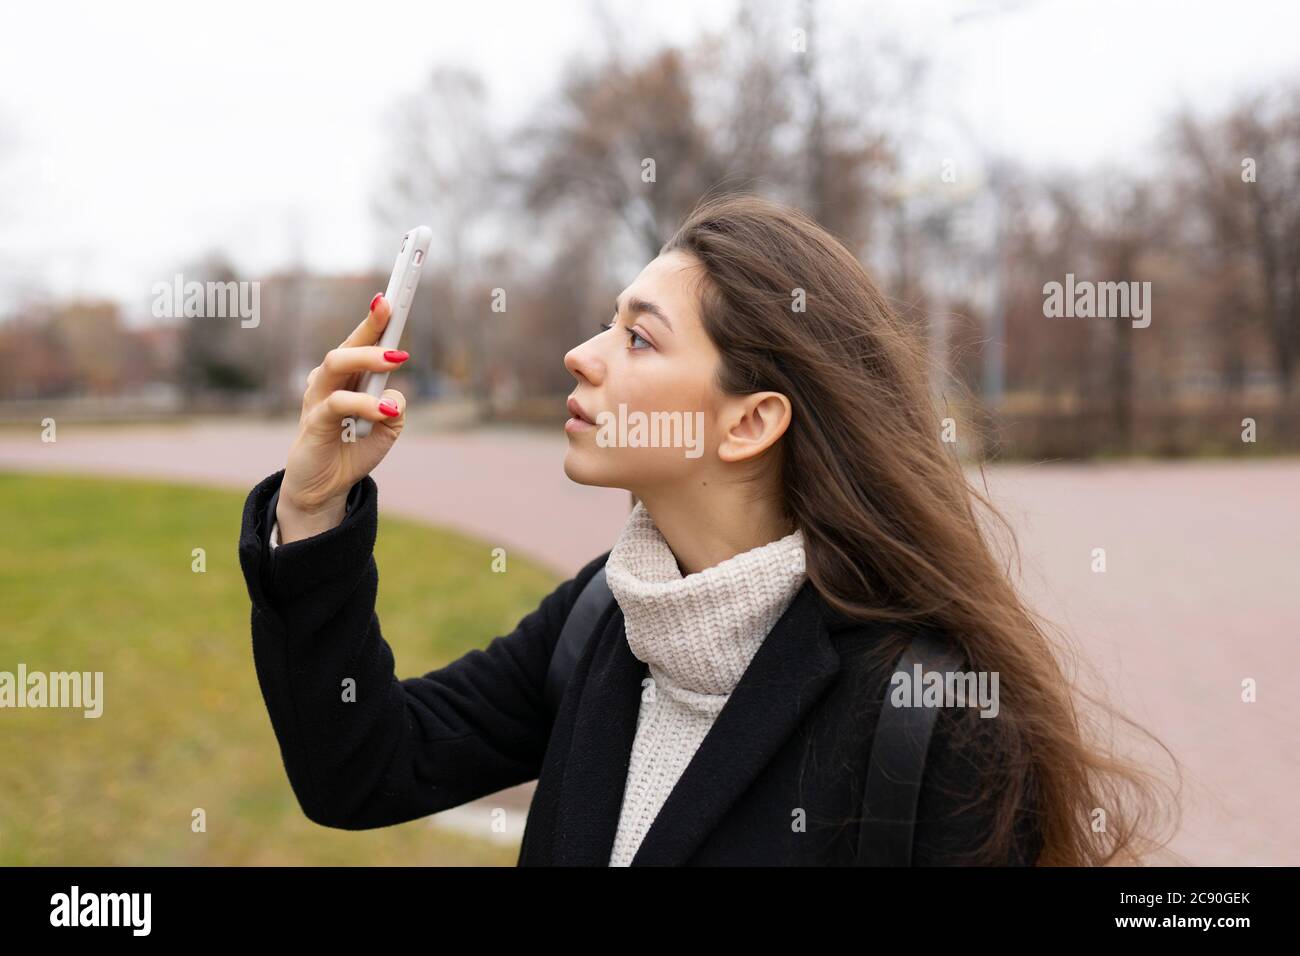 Russie, Chelyabinsk, jeune femme regardant le smartphone Banque D'Images